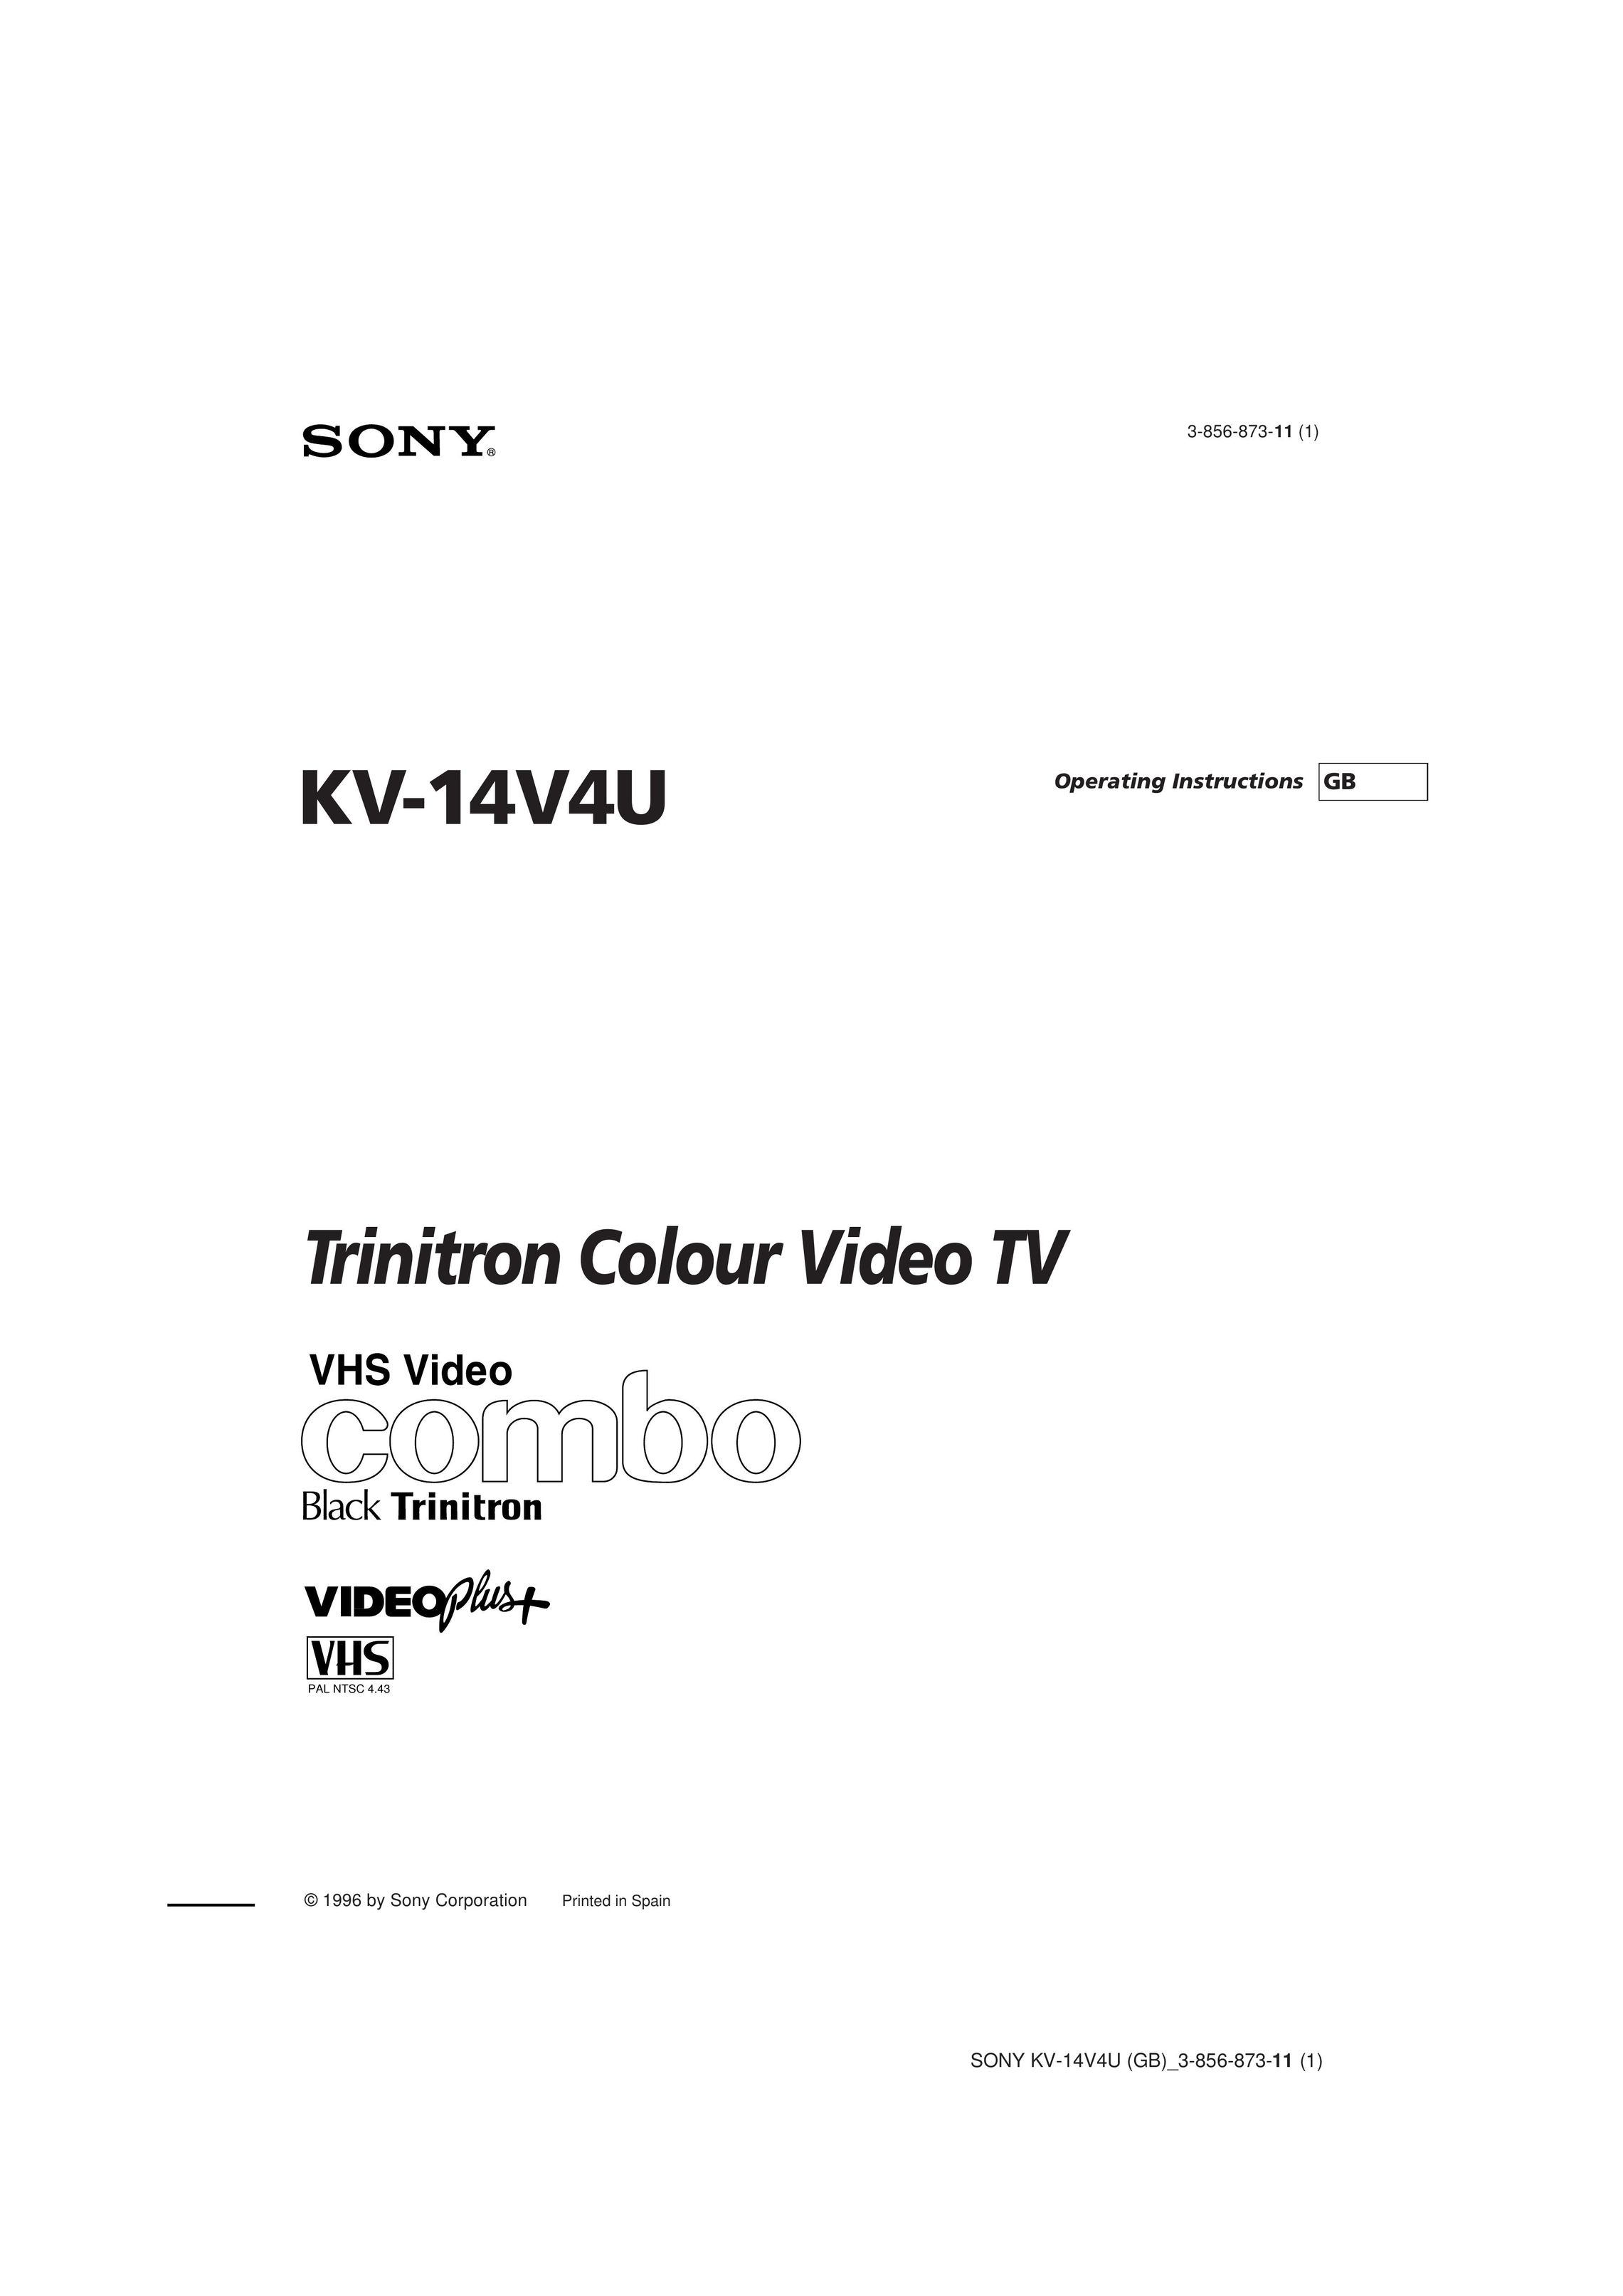 Sony KV-14V4U TV VCR Combo User Manual